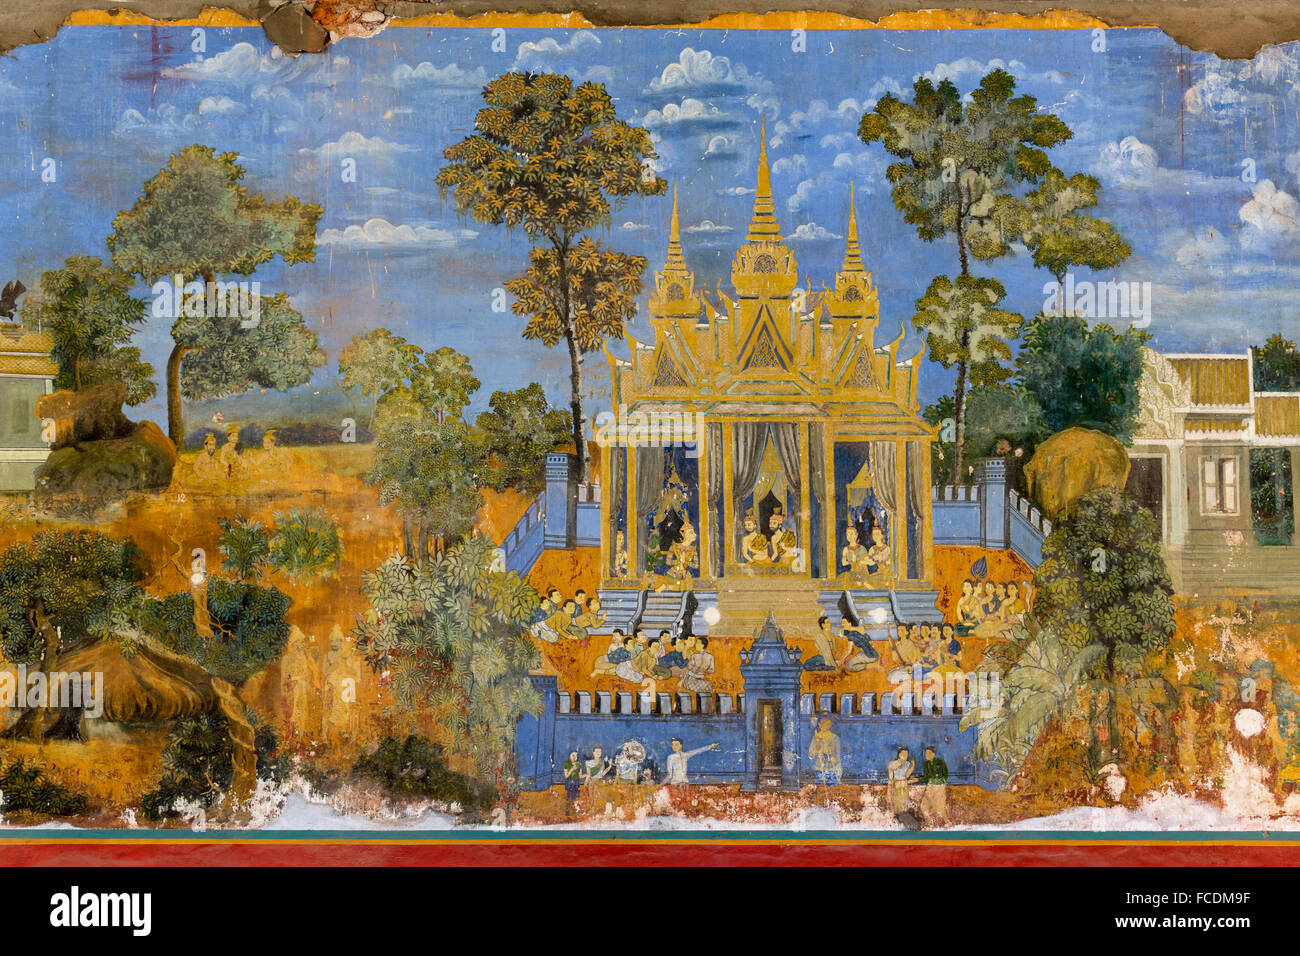 Mural from the Ramayana epic, mural, Silver Pagoda, Royal Palace, Phnom Penh, Cambodia Stock Photo